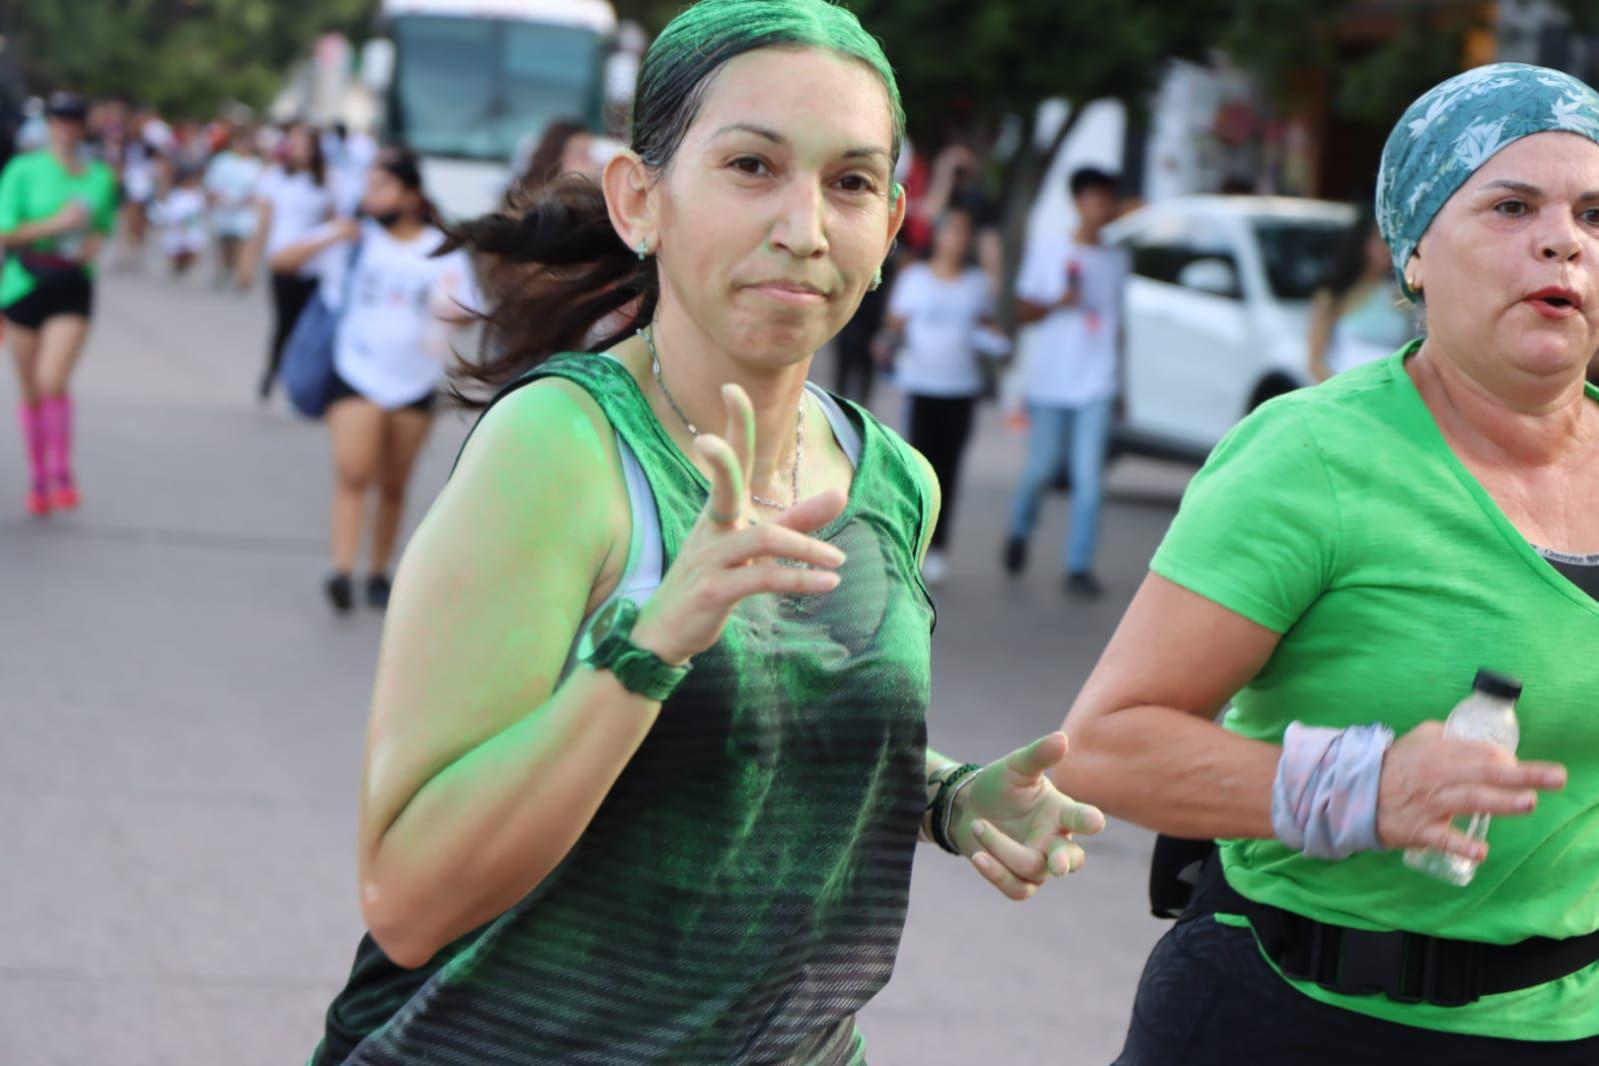 $!Carrera Píntate de Verde reúne a cerca de 20 mil personas en Sinaloa